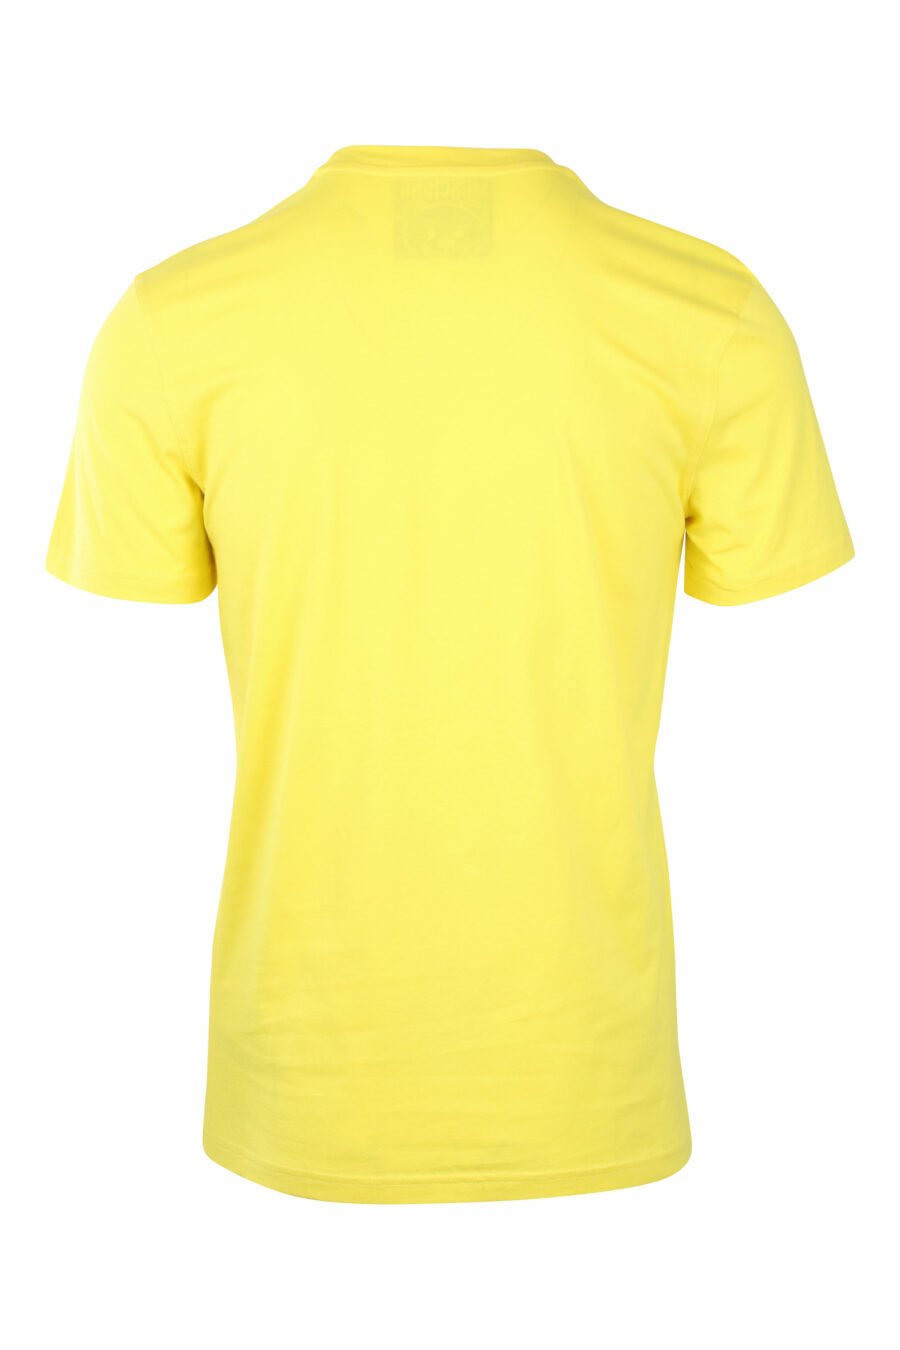 Gelbes T-Shirt mit einfarbigem Bären-Minilogo - IMG 1409